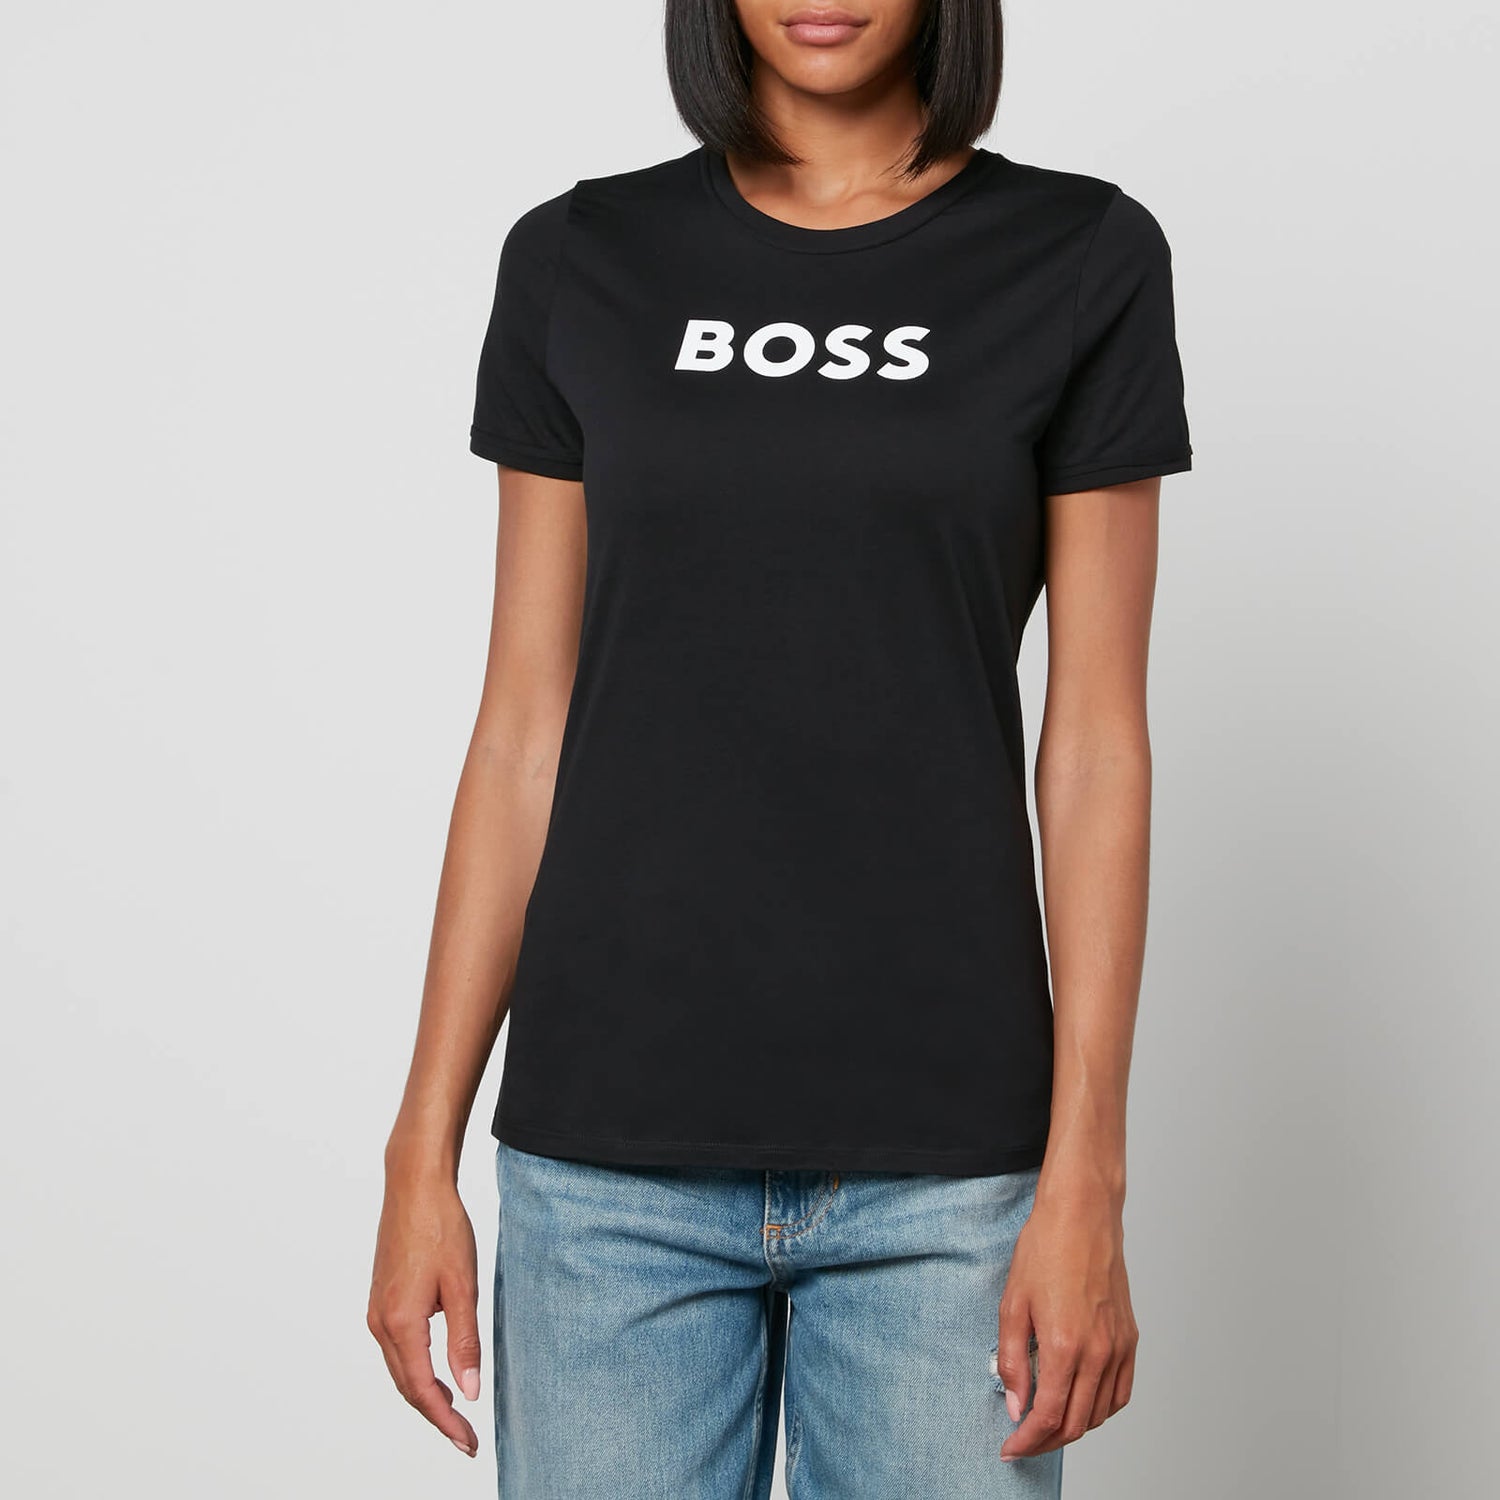 BOSS Women's Elogo T-Shirt - Black - XS